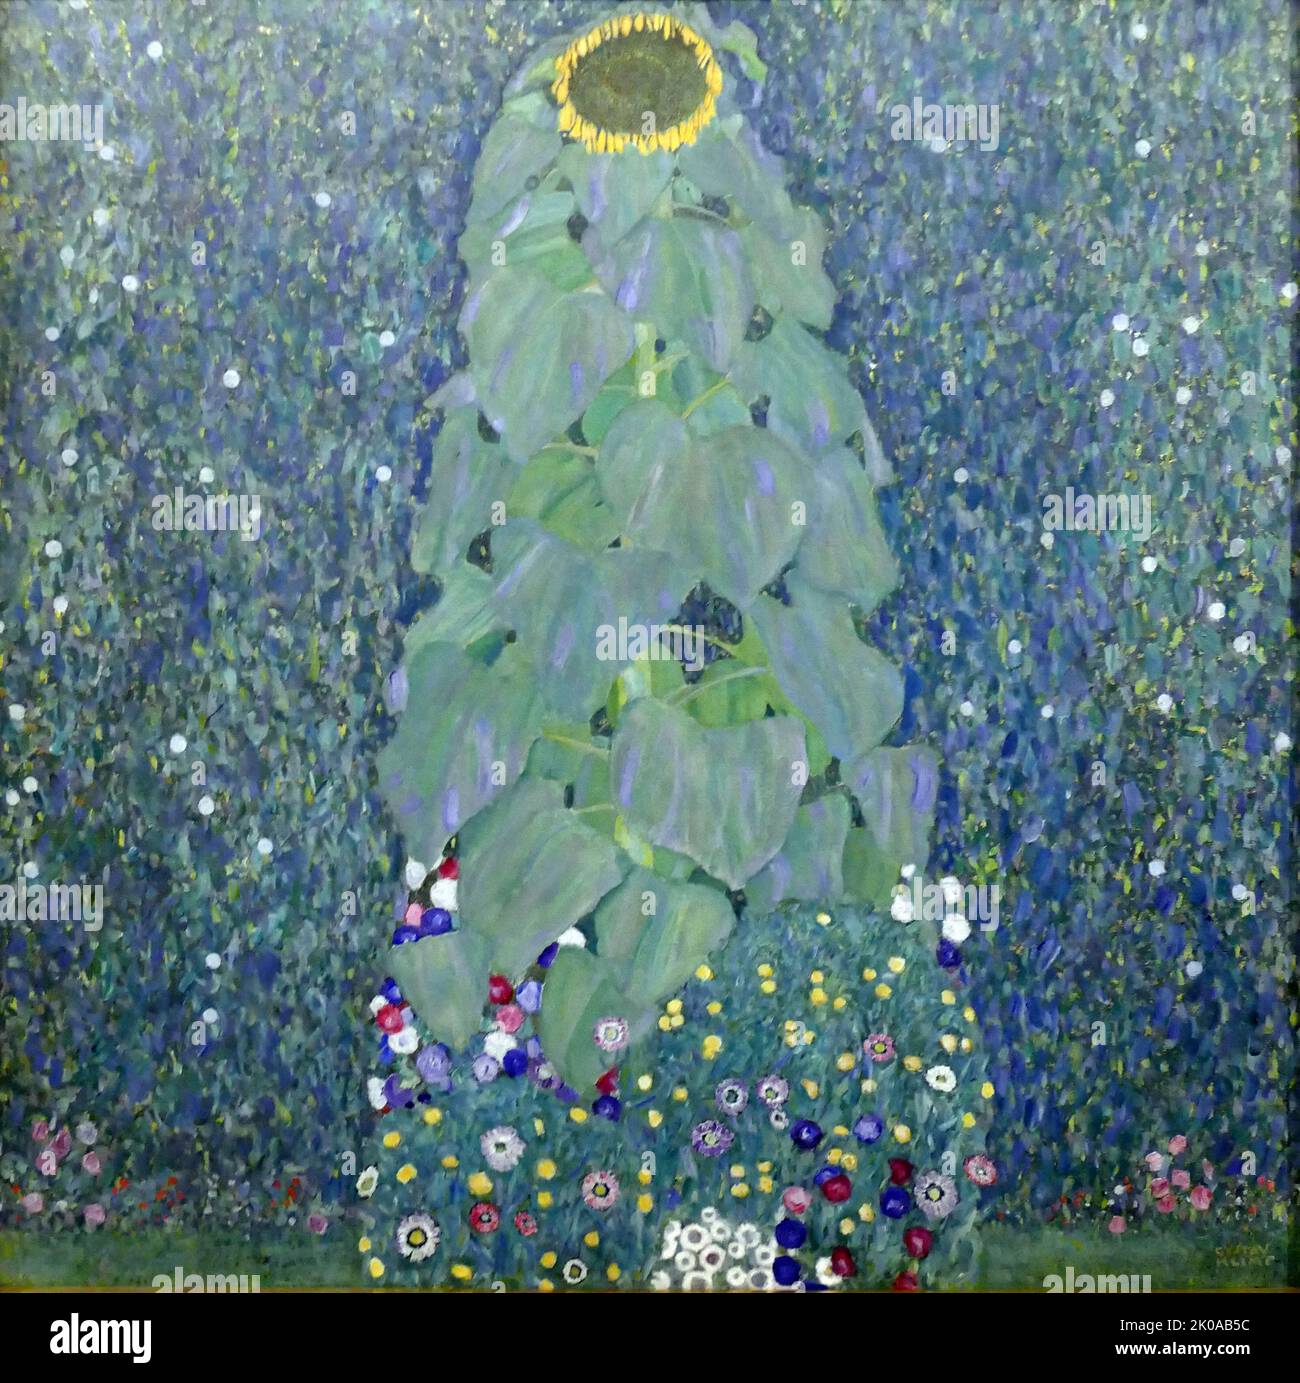 Sunflower, von Gustav Klimt, 1907/1908. Gustav Klimt (14. Juli 1862 - 6. Februar 1918) war ein österreichischer Symbolmaler und einer der prominentesten Vertreter der Wiener Secession. Klimt ist bekannt für seine Gemälde, Wandgemälde, Skizzen und andere Kunstobjekte Stockfoto